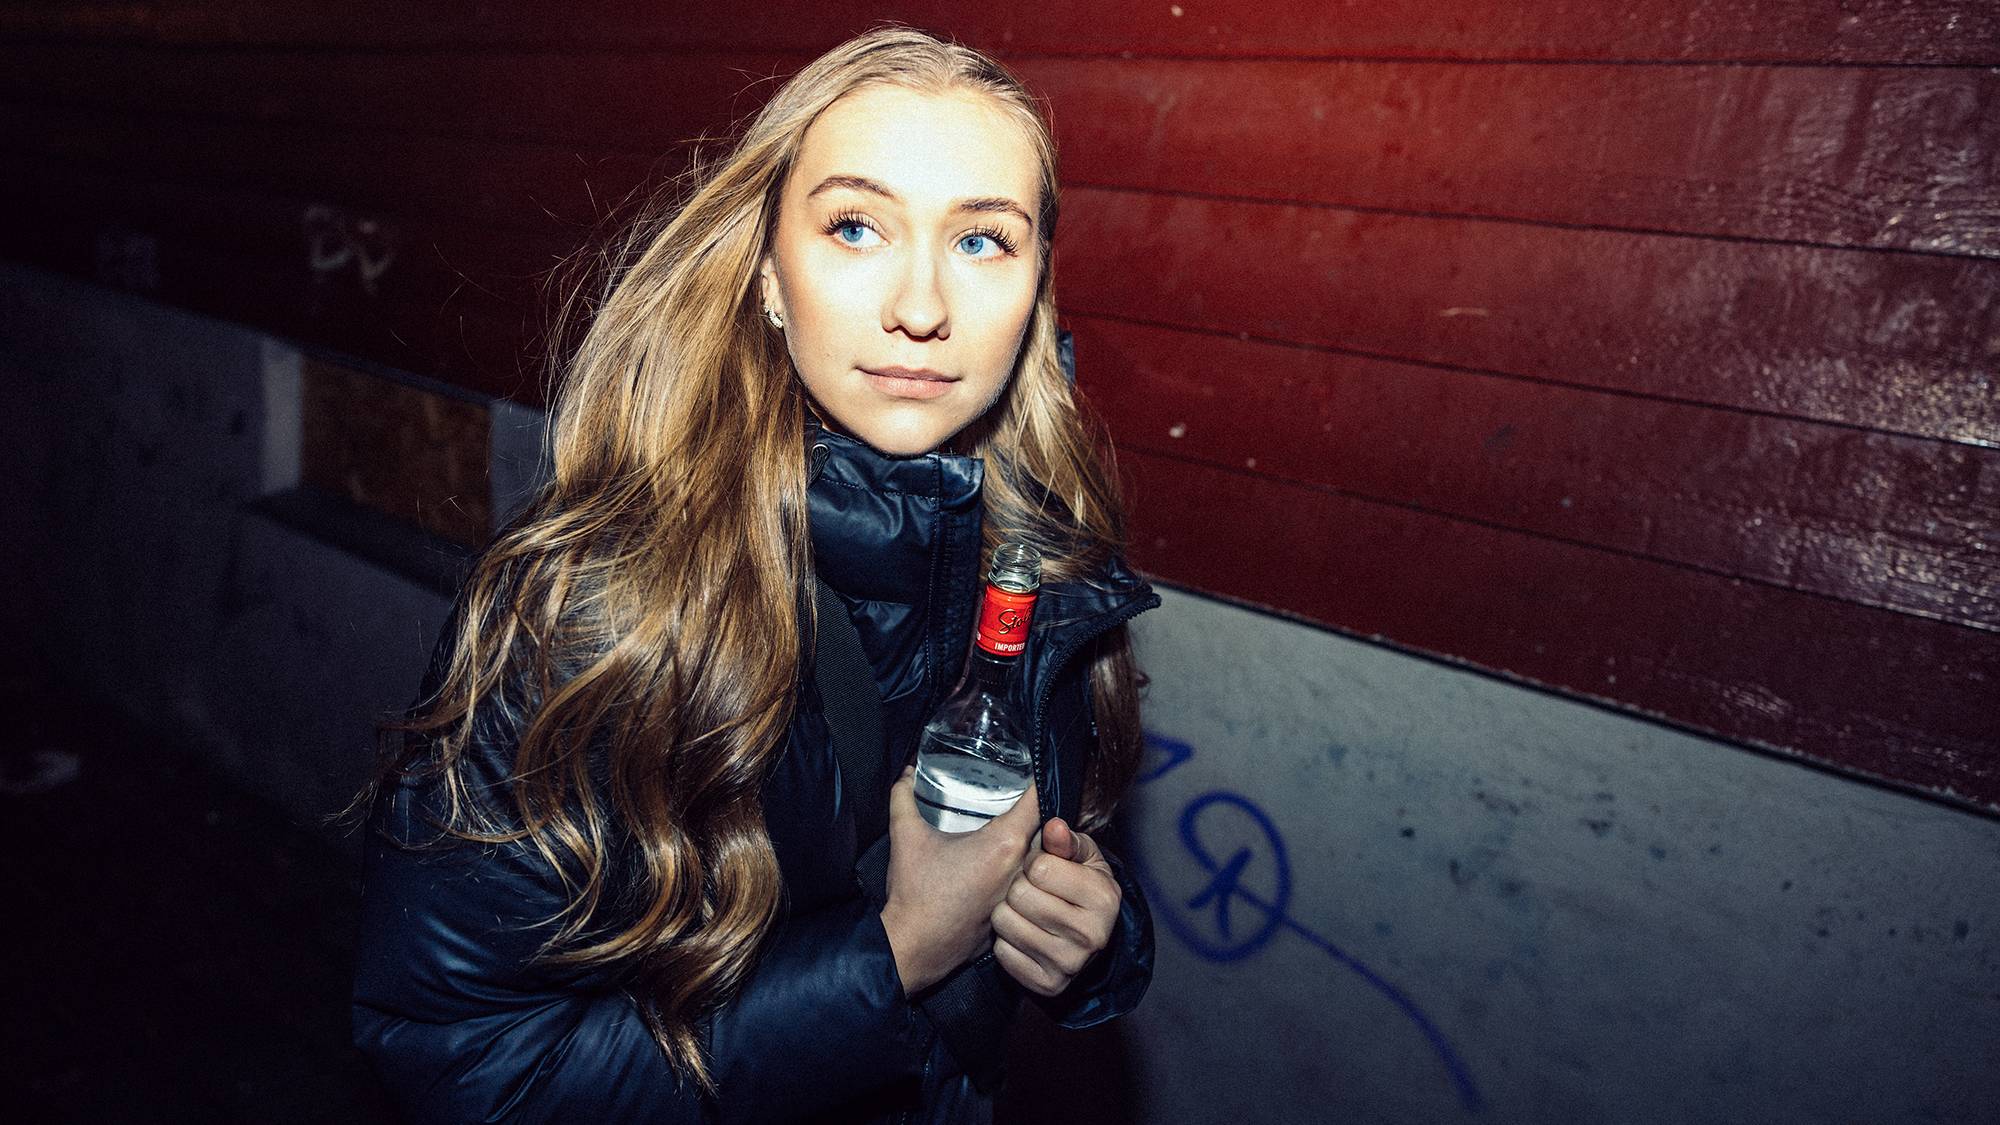 Julie (23) har langt hår med lette krøller og store blå øyne. Hun skjuler en vodkaflaske med vann i den mørke boblejakken sin. Hun ser til venstre med et litt urolig blikk mens hun går forbi en vegg med graffiti i et smug.